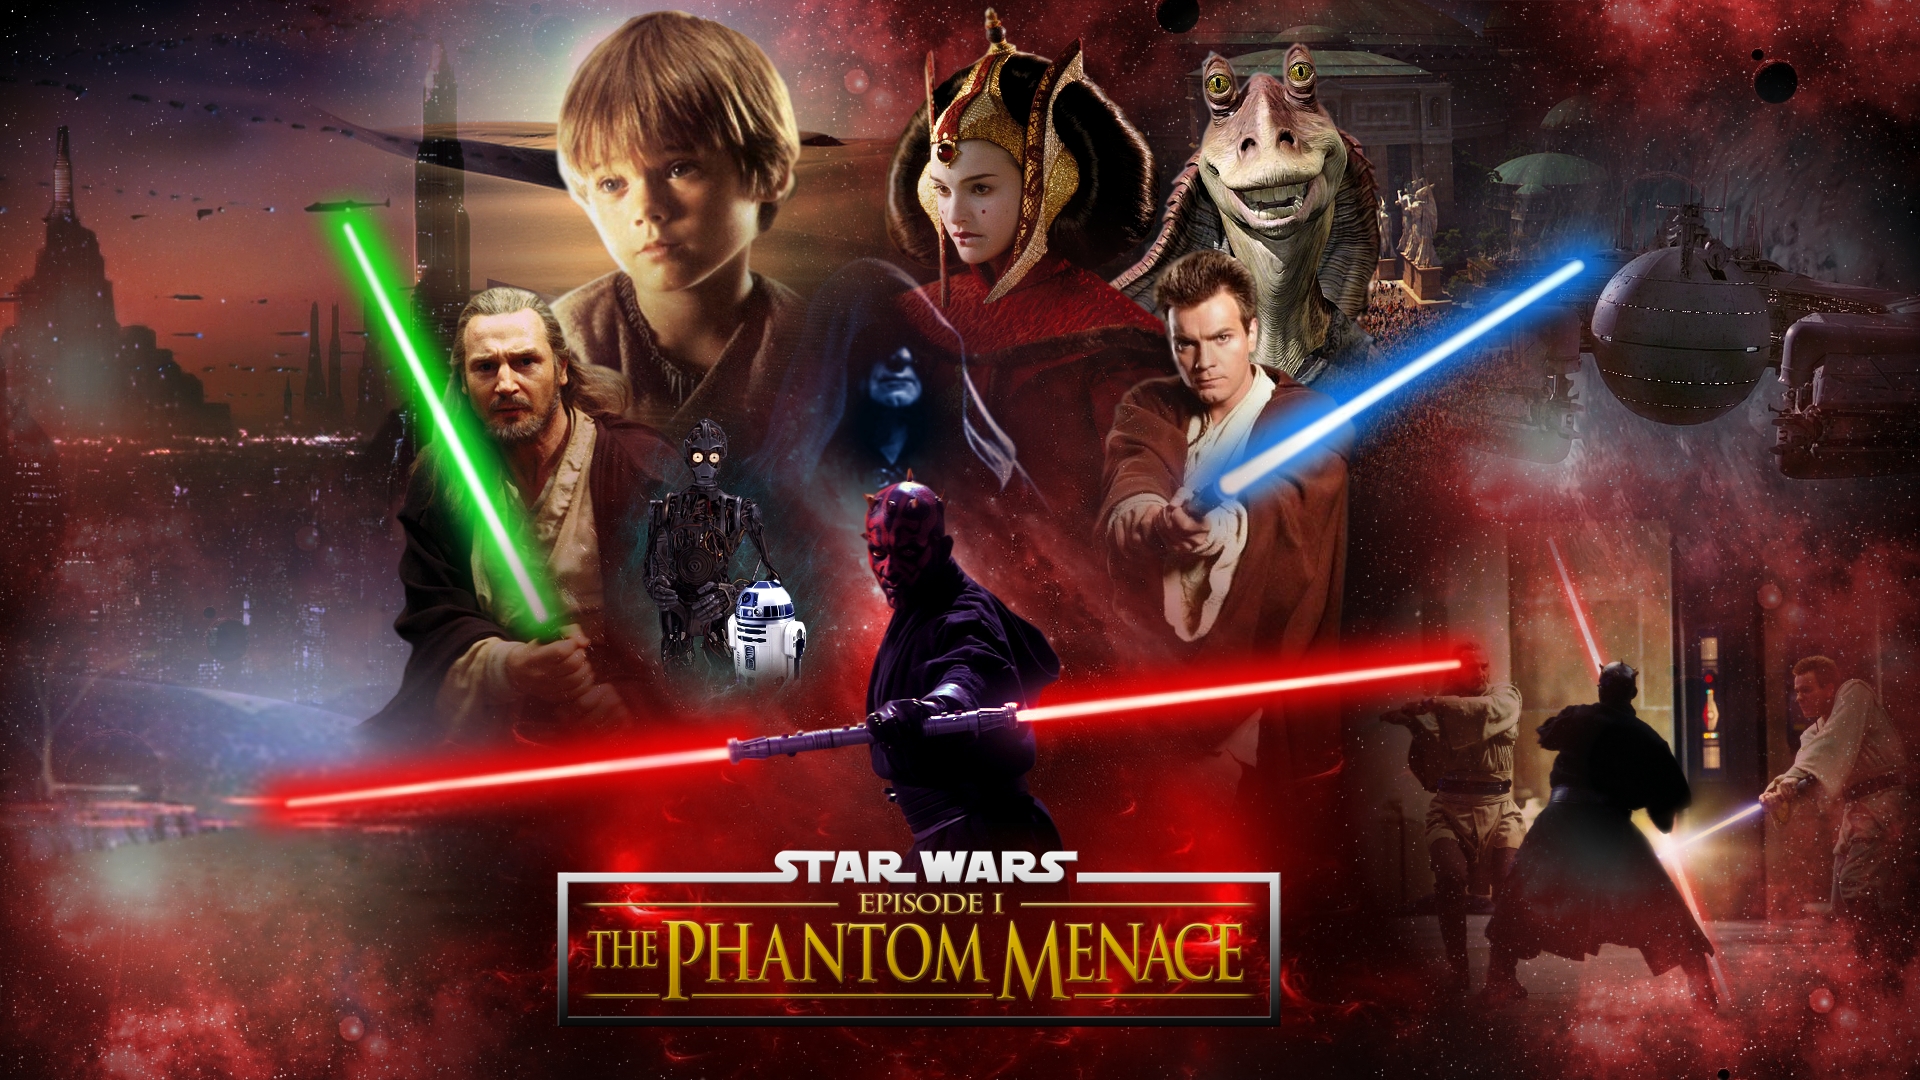 star wars episode 1 the phantom menace pc game free download